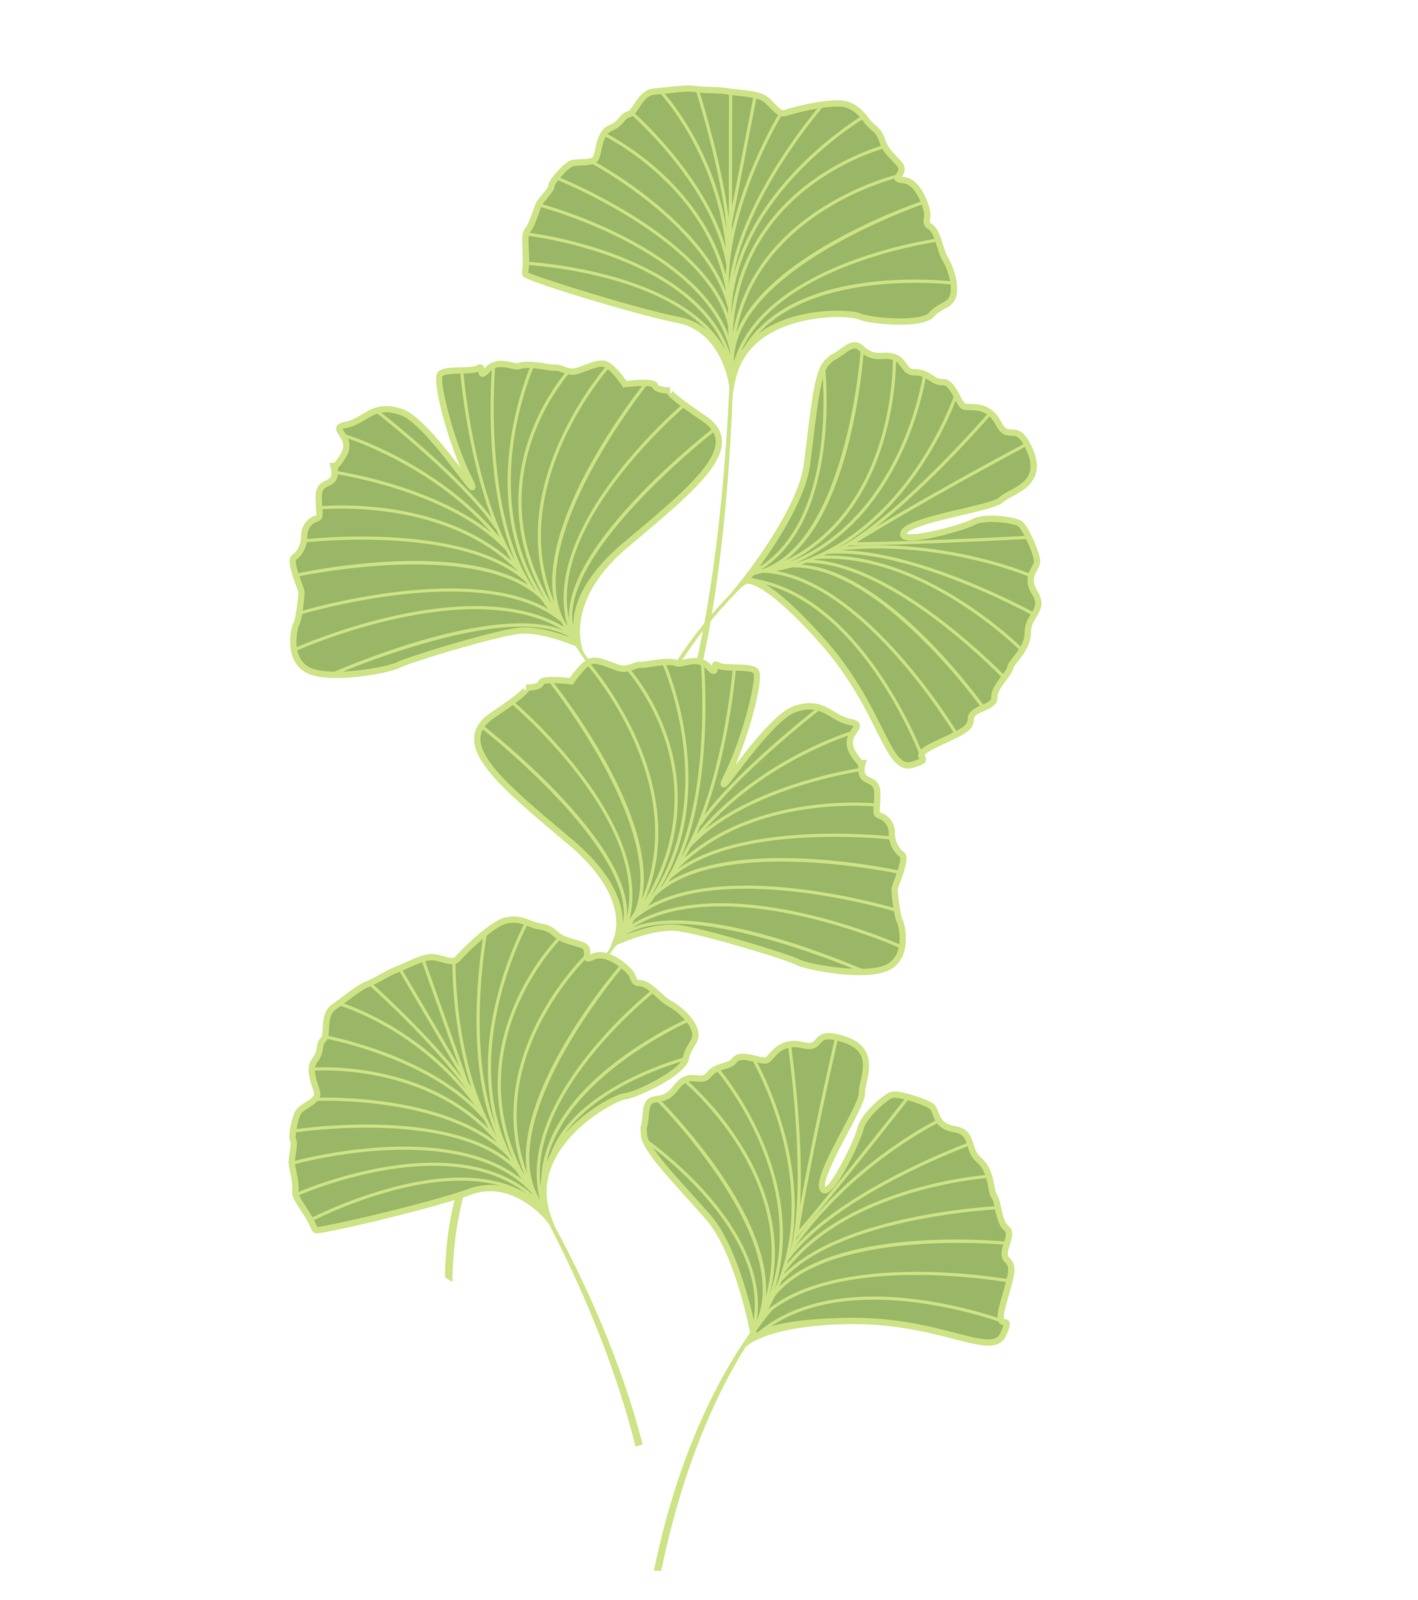 Ginkgo biloba leaves by odina222